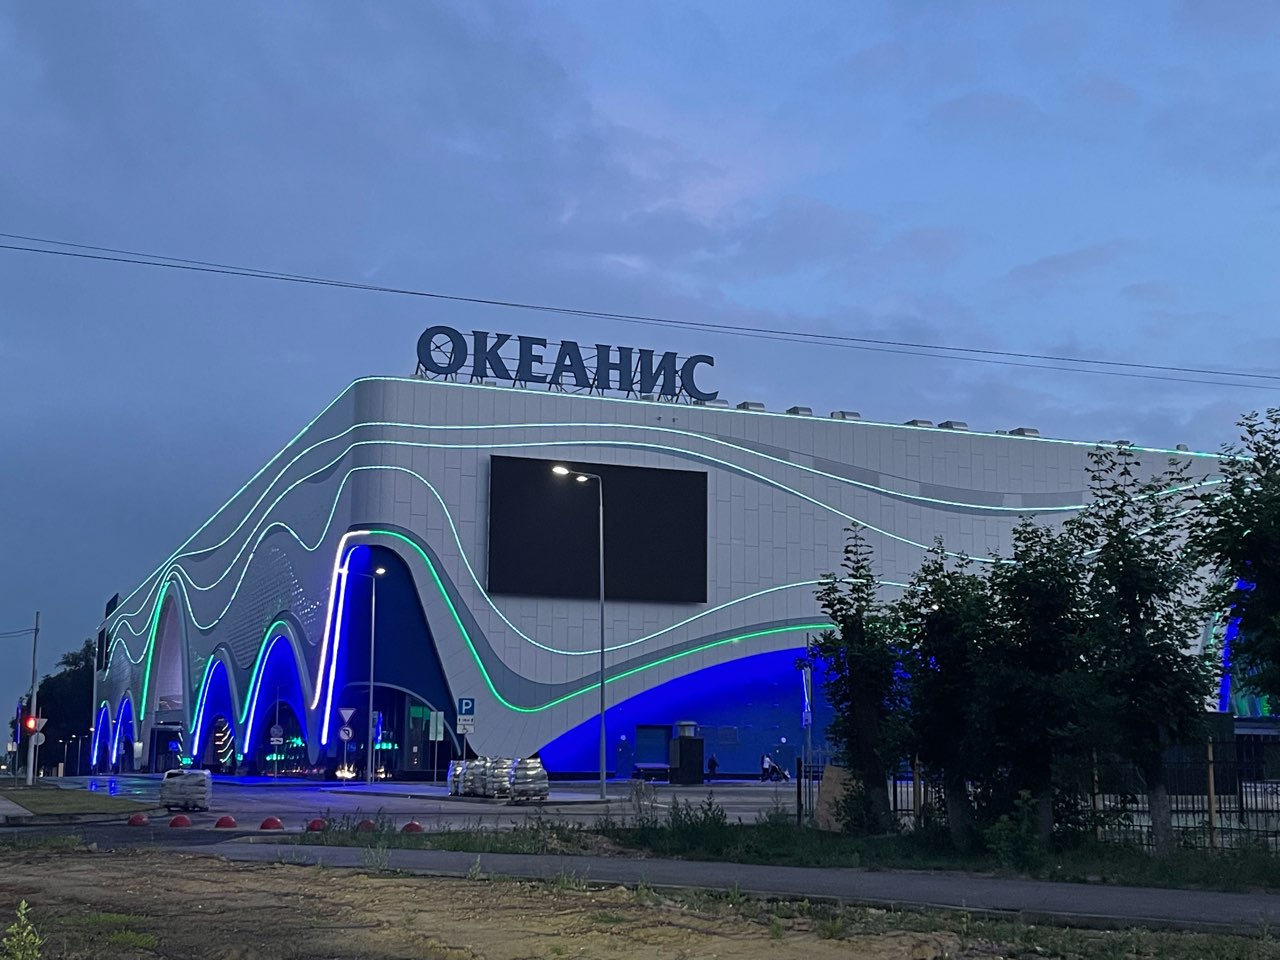 Нижегородский аквапарк «Океанис» готовится к открытию - фото 1